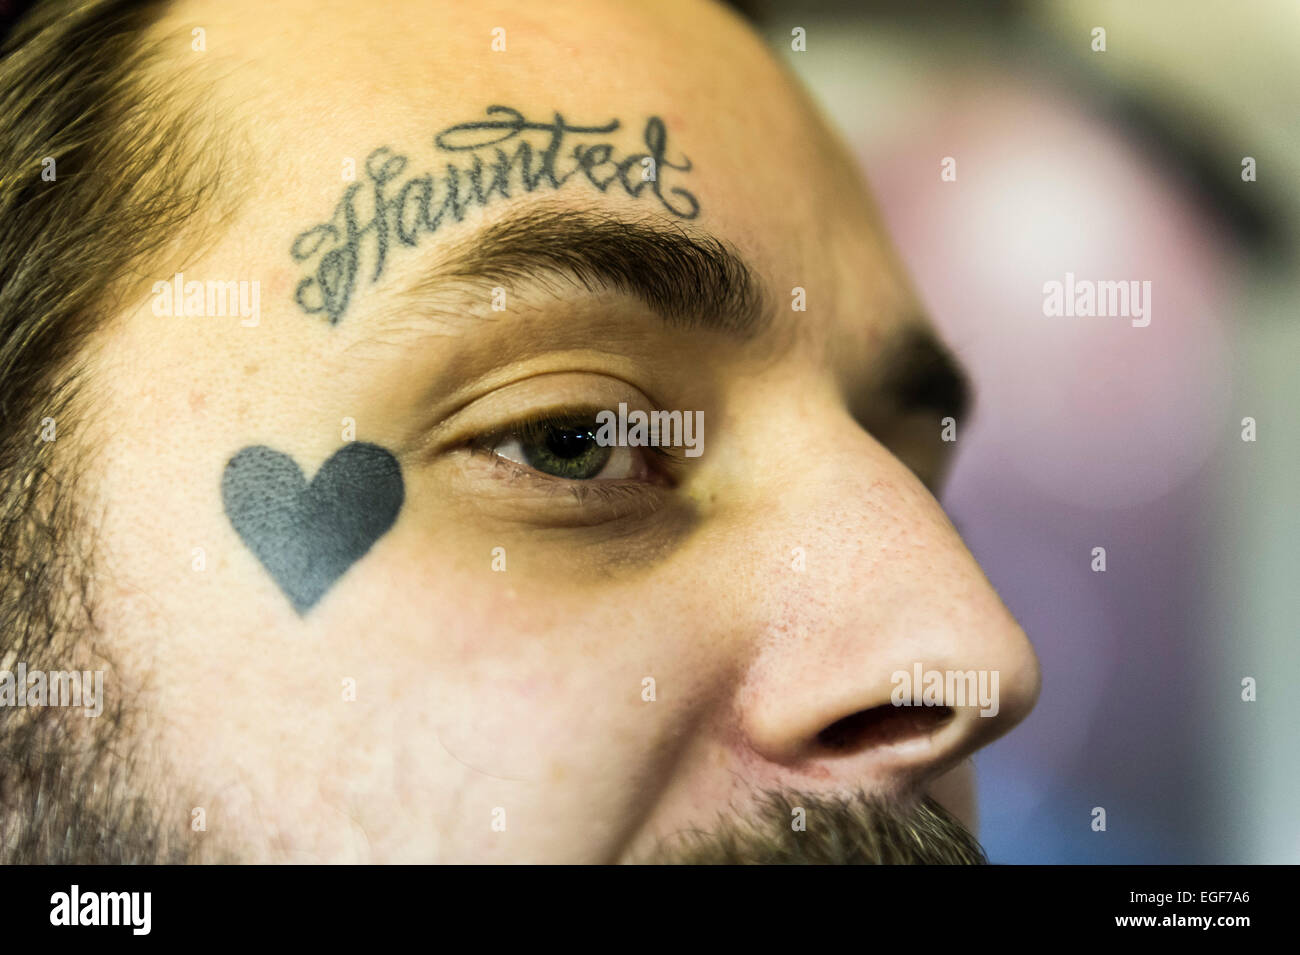 Un homme avec un visage tatoué à la Convention de Tatouage de Brighton. Banque D'Images